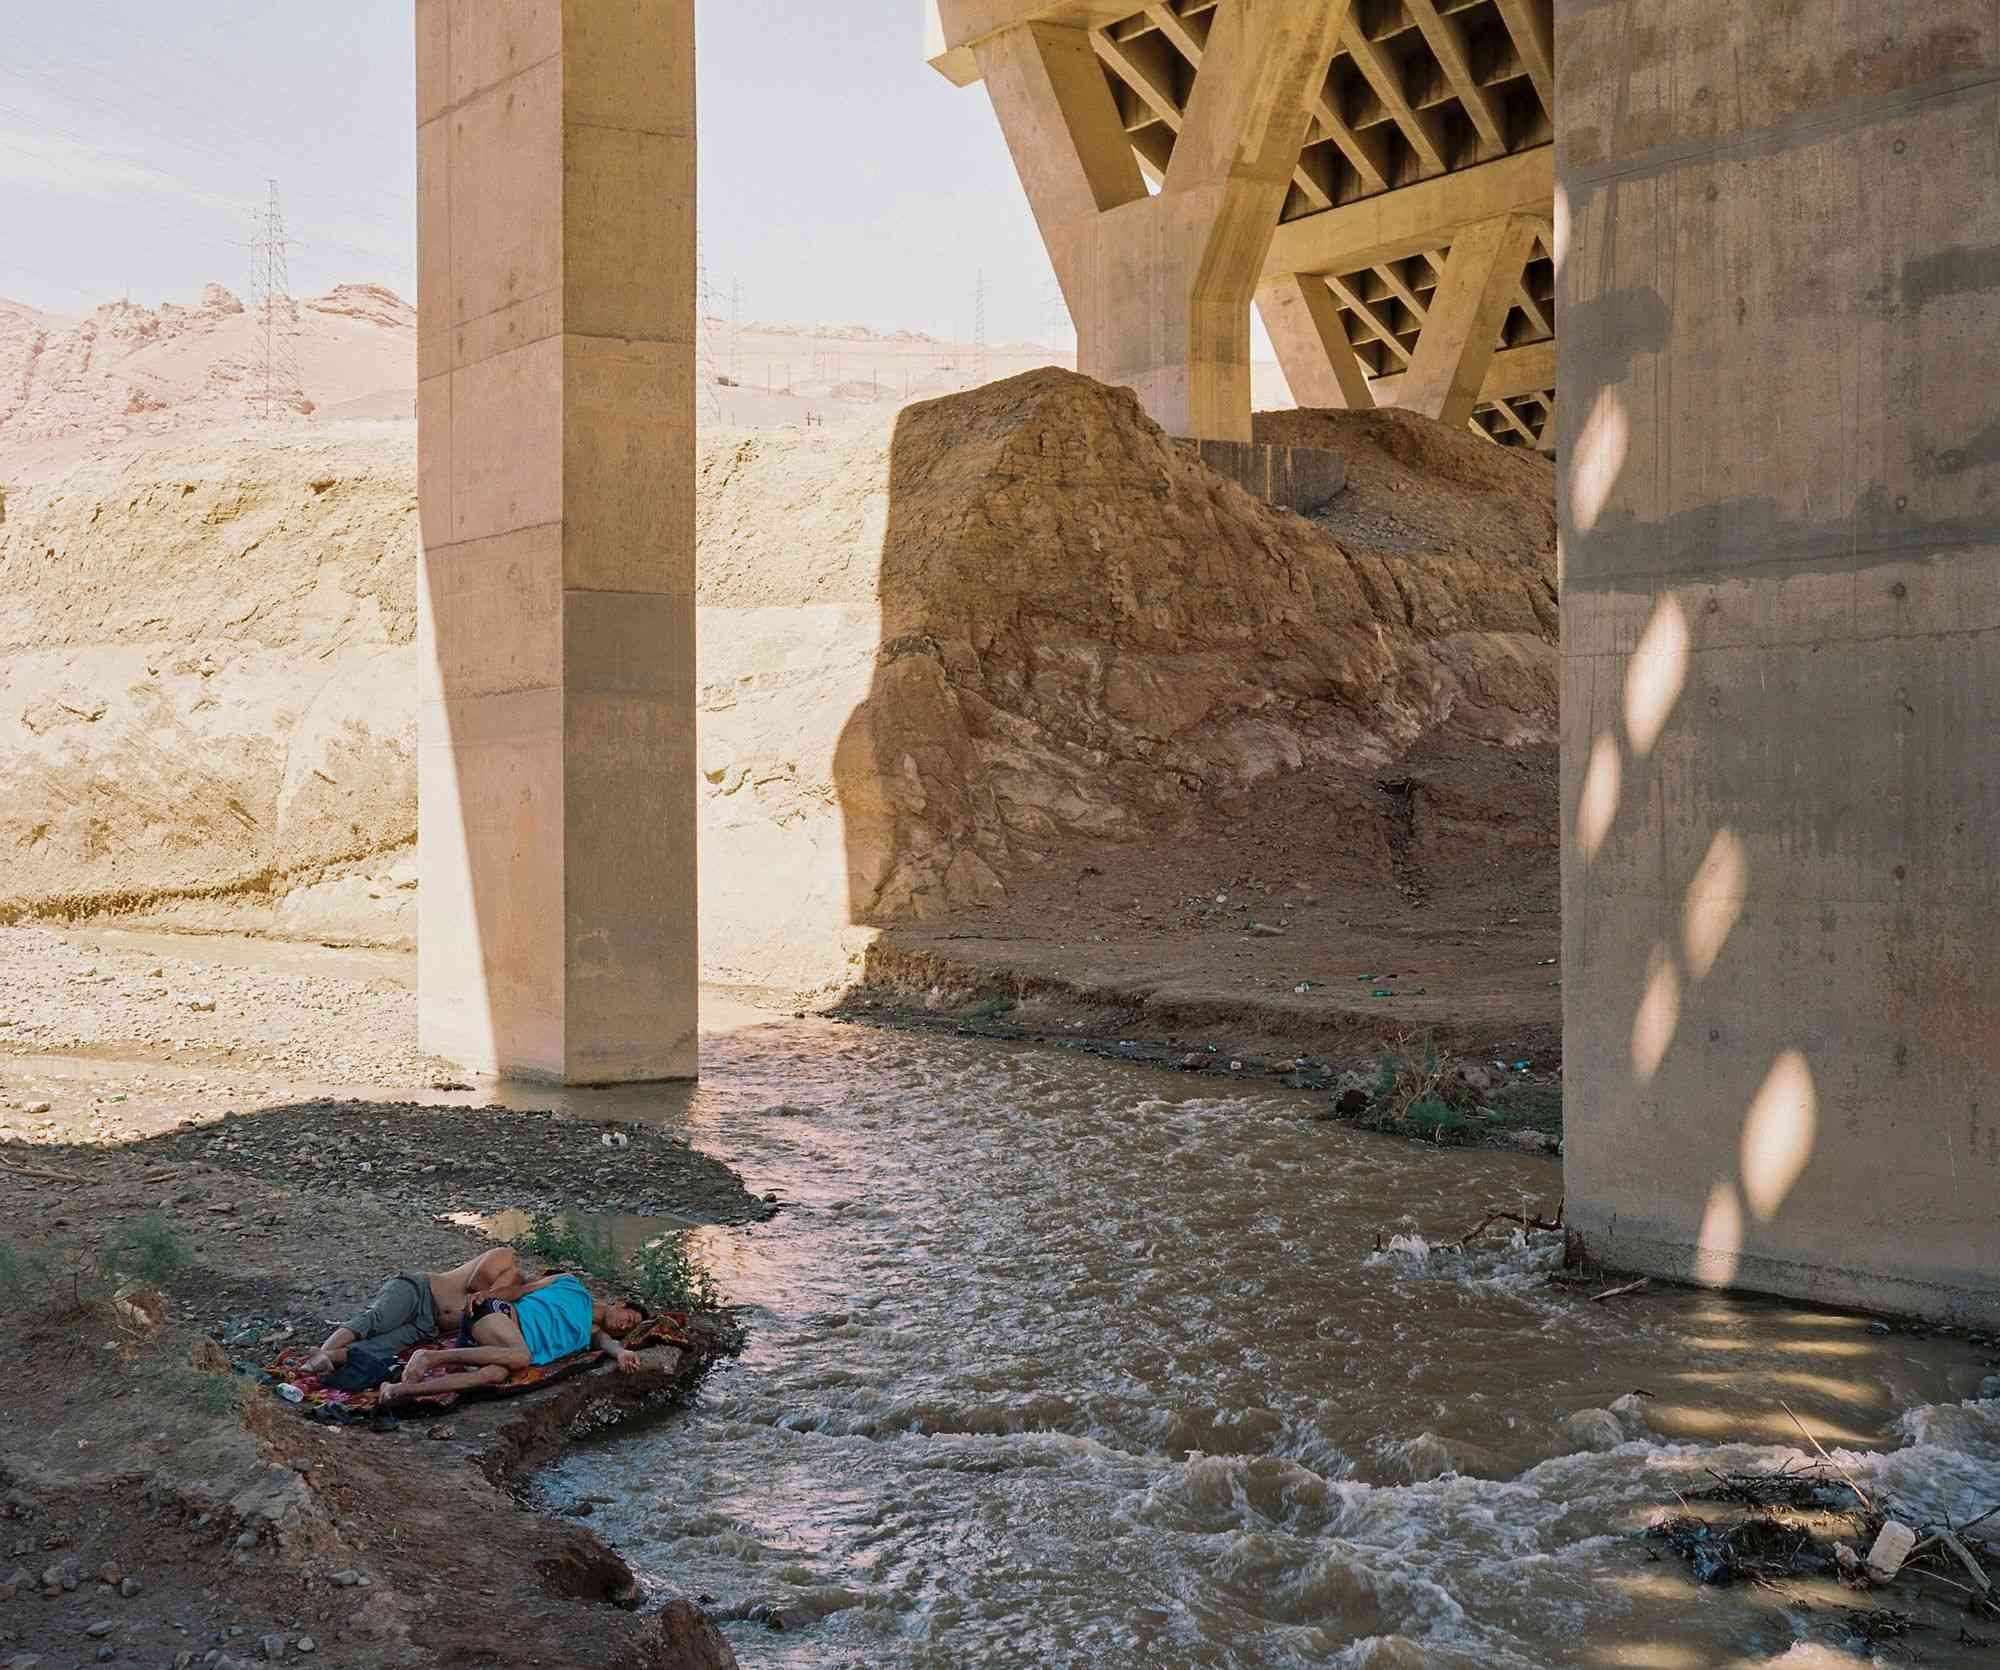 细腻笔触描绘新疆生活 横跨西部的多元之旅